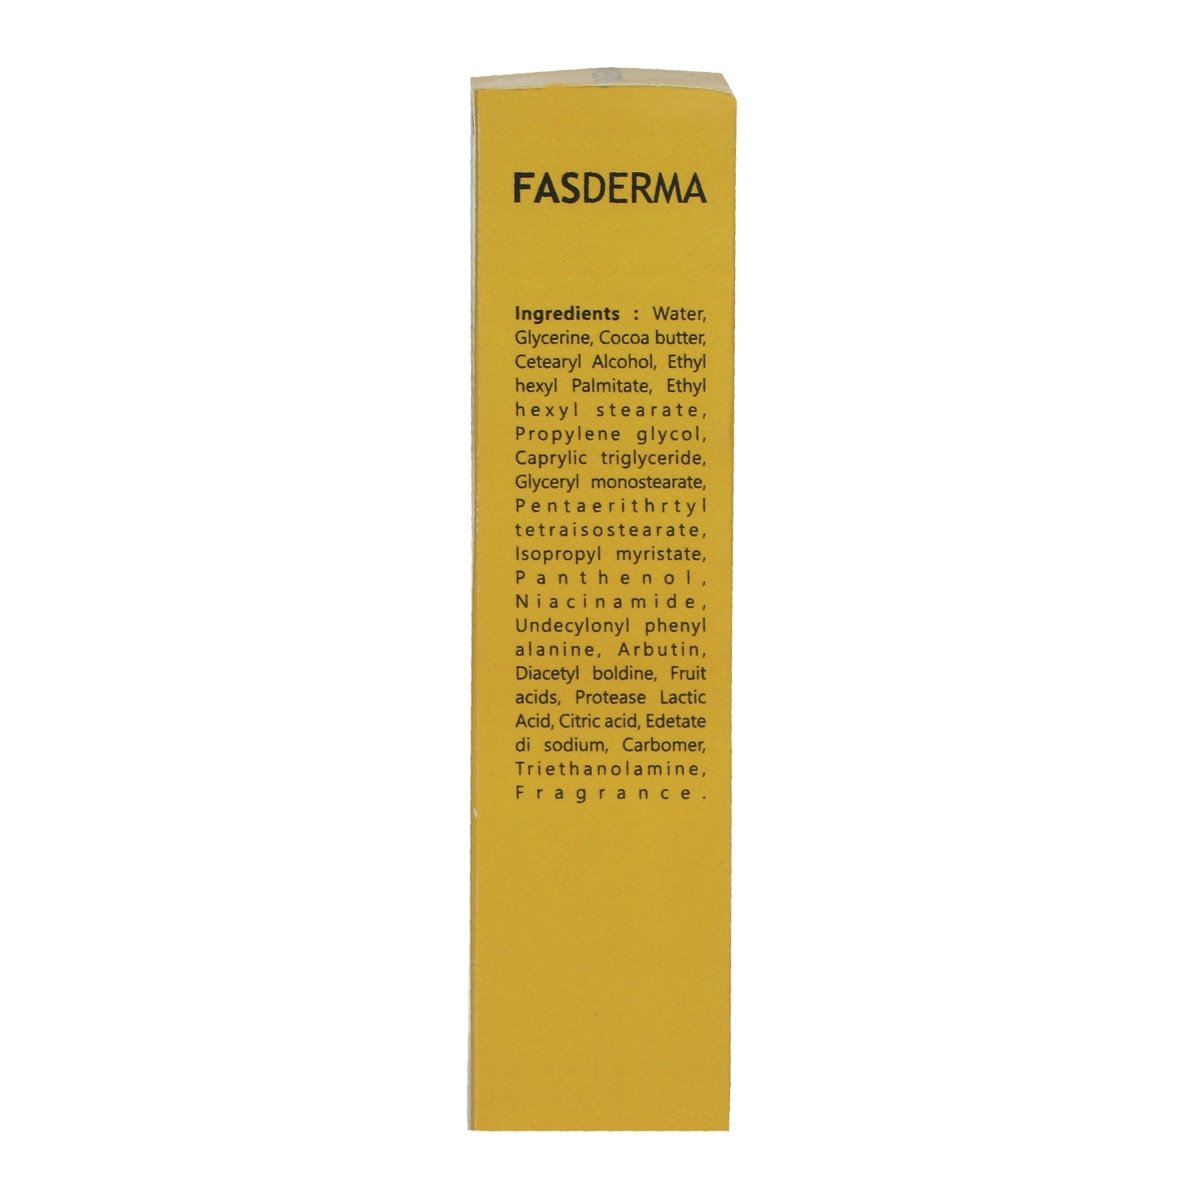 Fasderma Instant Cream Premium, 50gm - Fasderma India